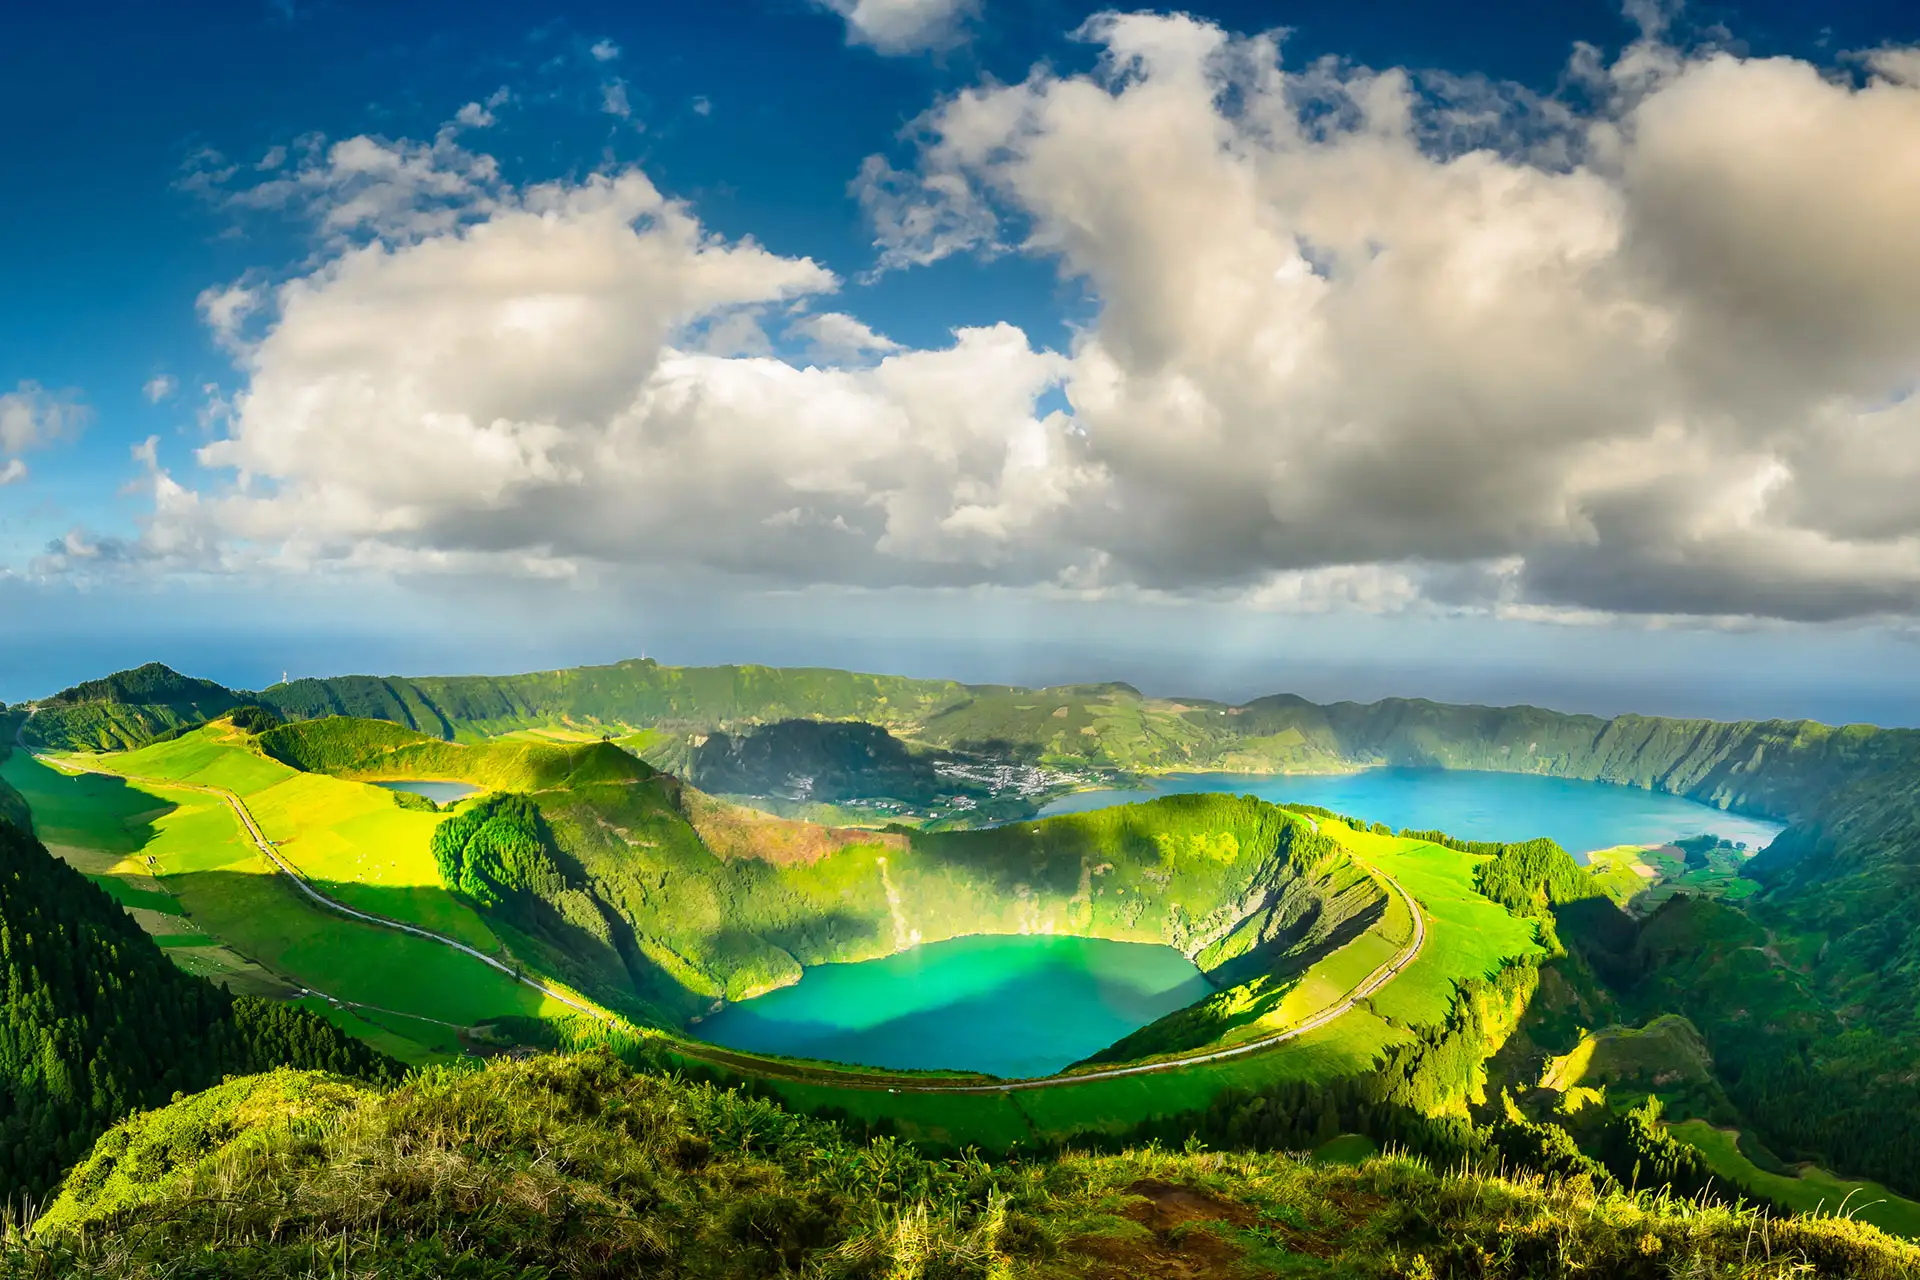 Azores; Courtesy of Dov Fuchs/Shutterstock.com